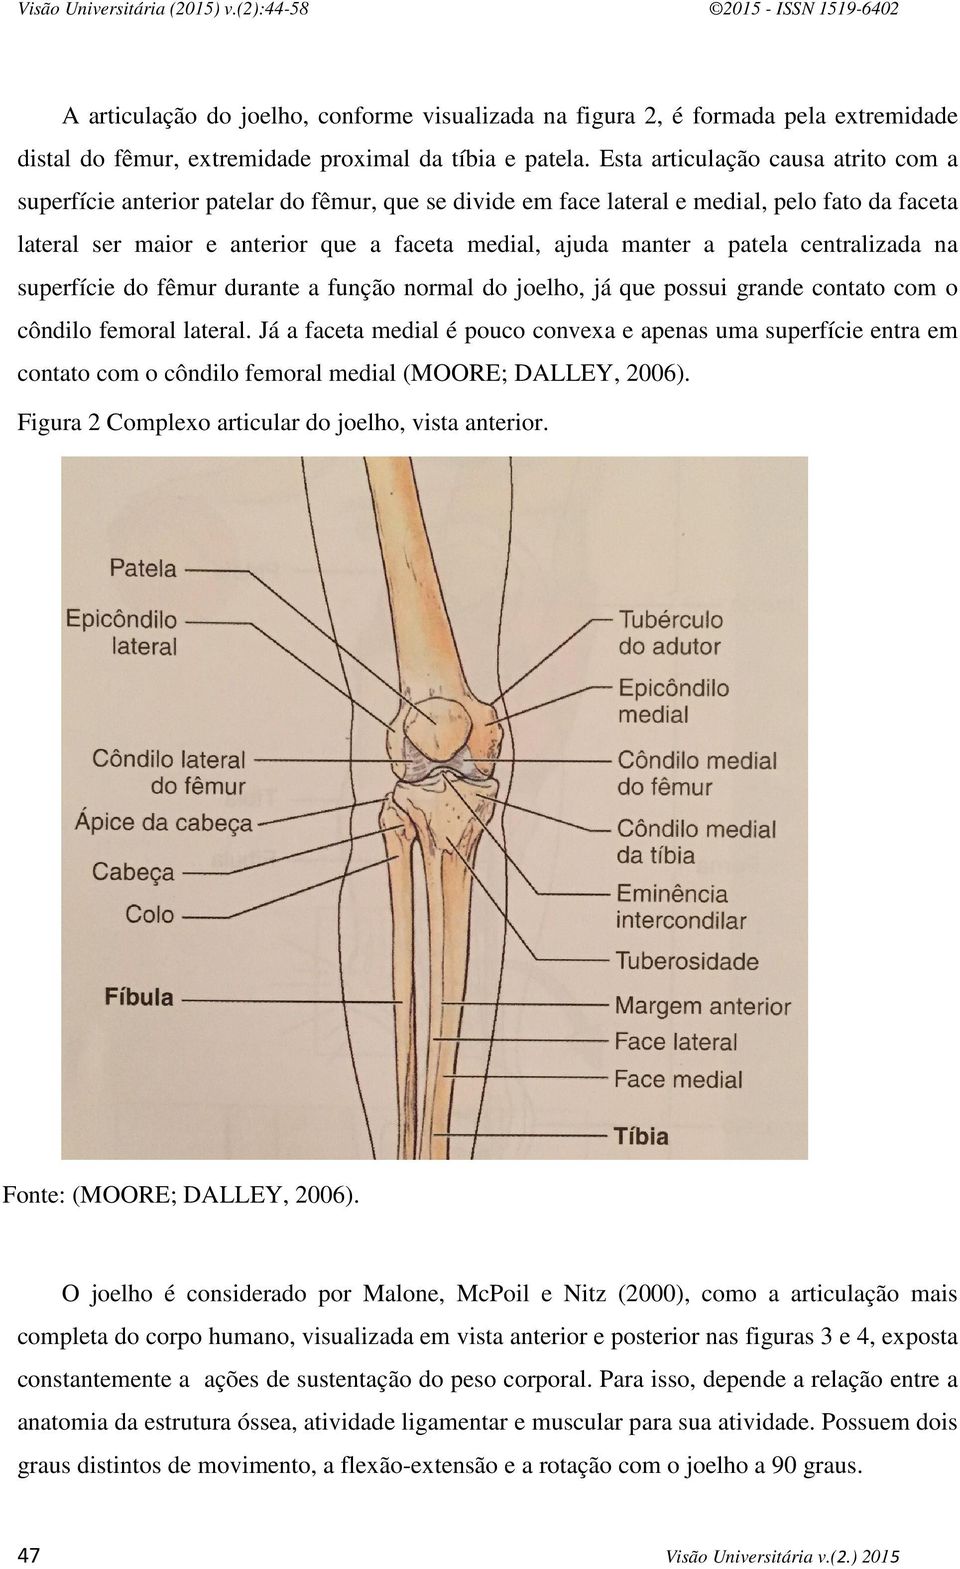 patela centralizada na superfície do fêmur durante a função normal do joelho, já que possui grande contato com o côndilo femoral lateral.